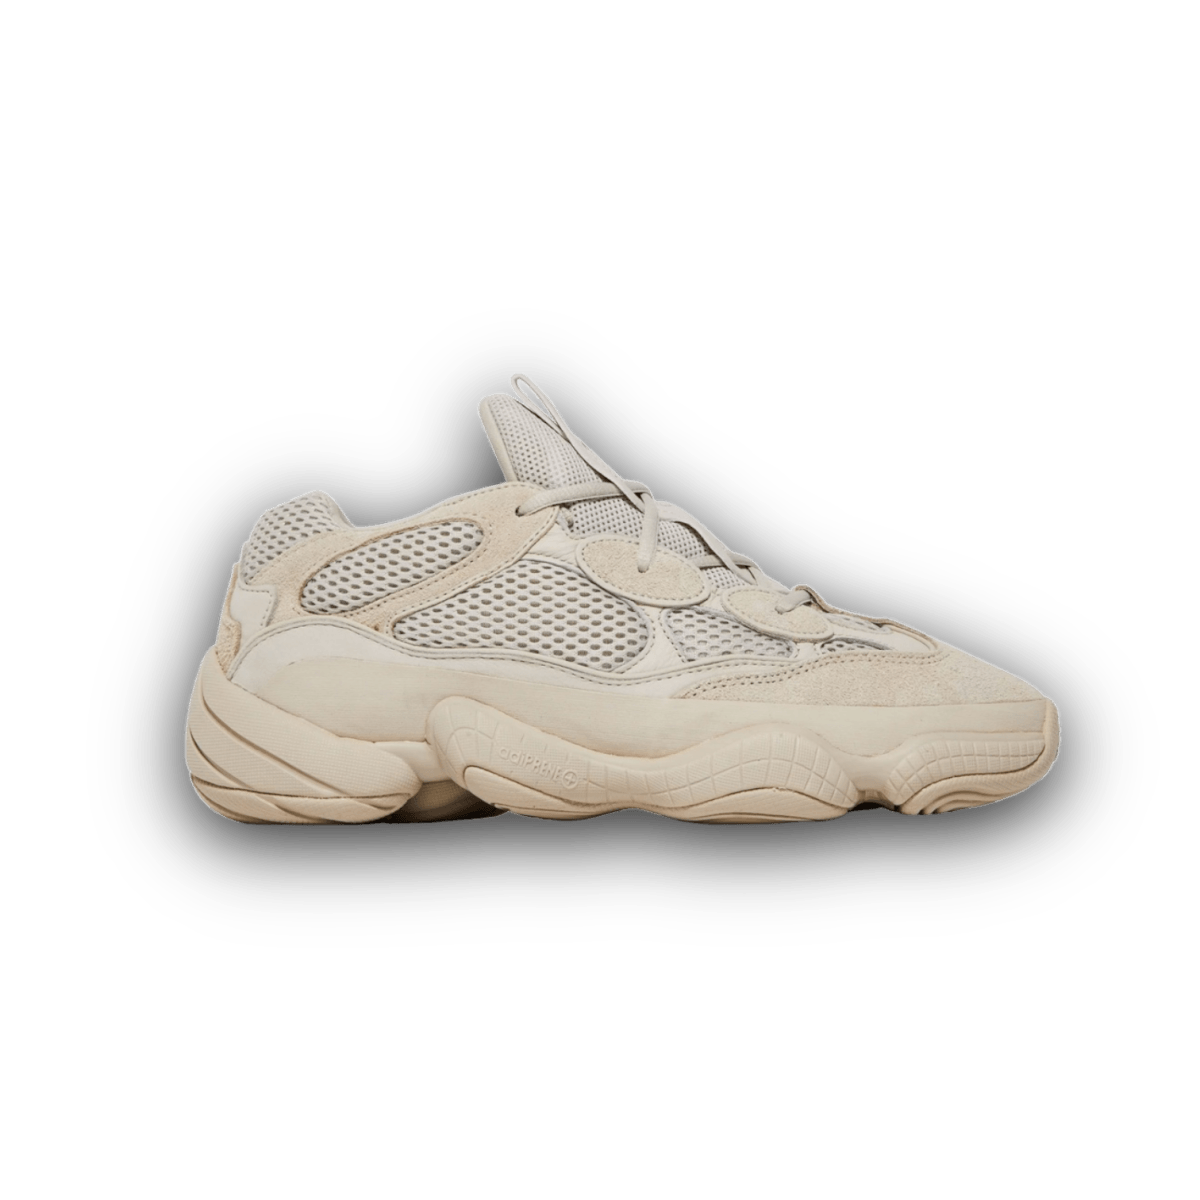 Yeezy 500 Blush - Low Sneaker - Jawns on Fire Sneakers & Streetwear